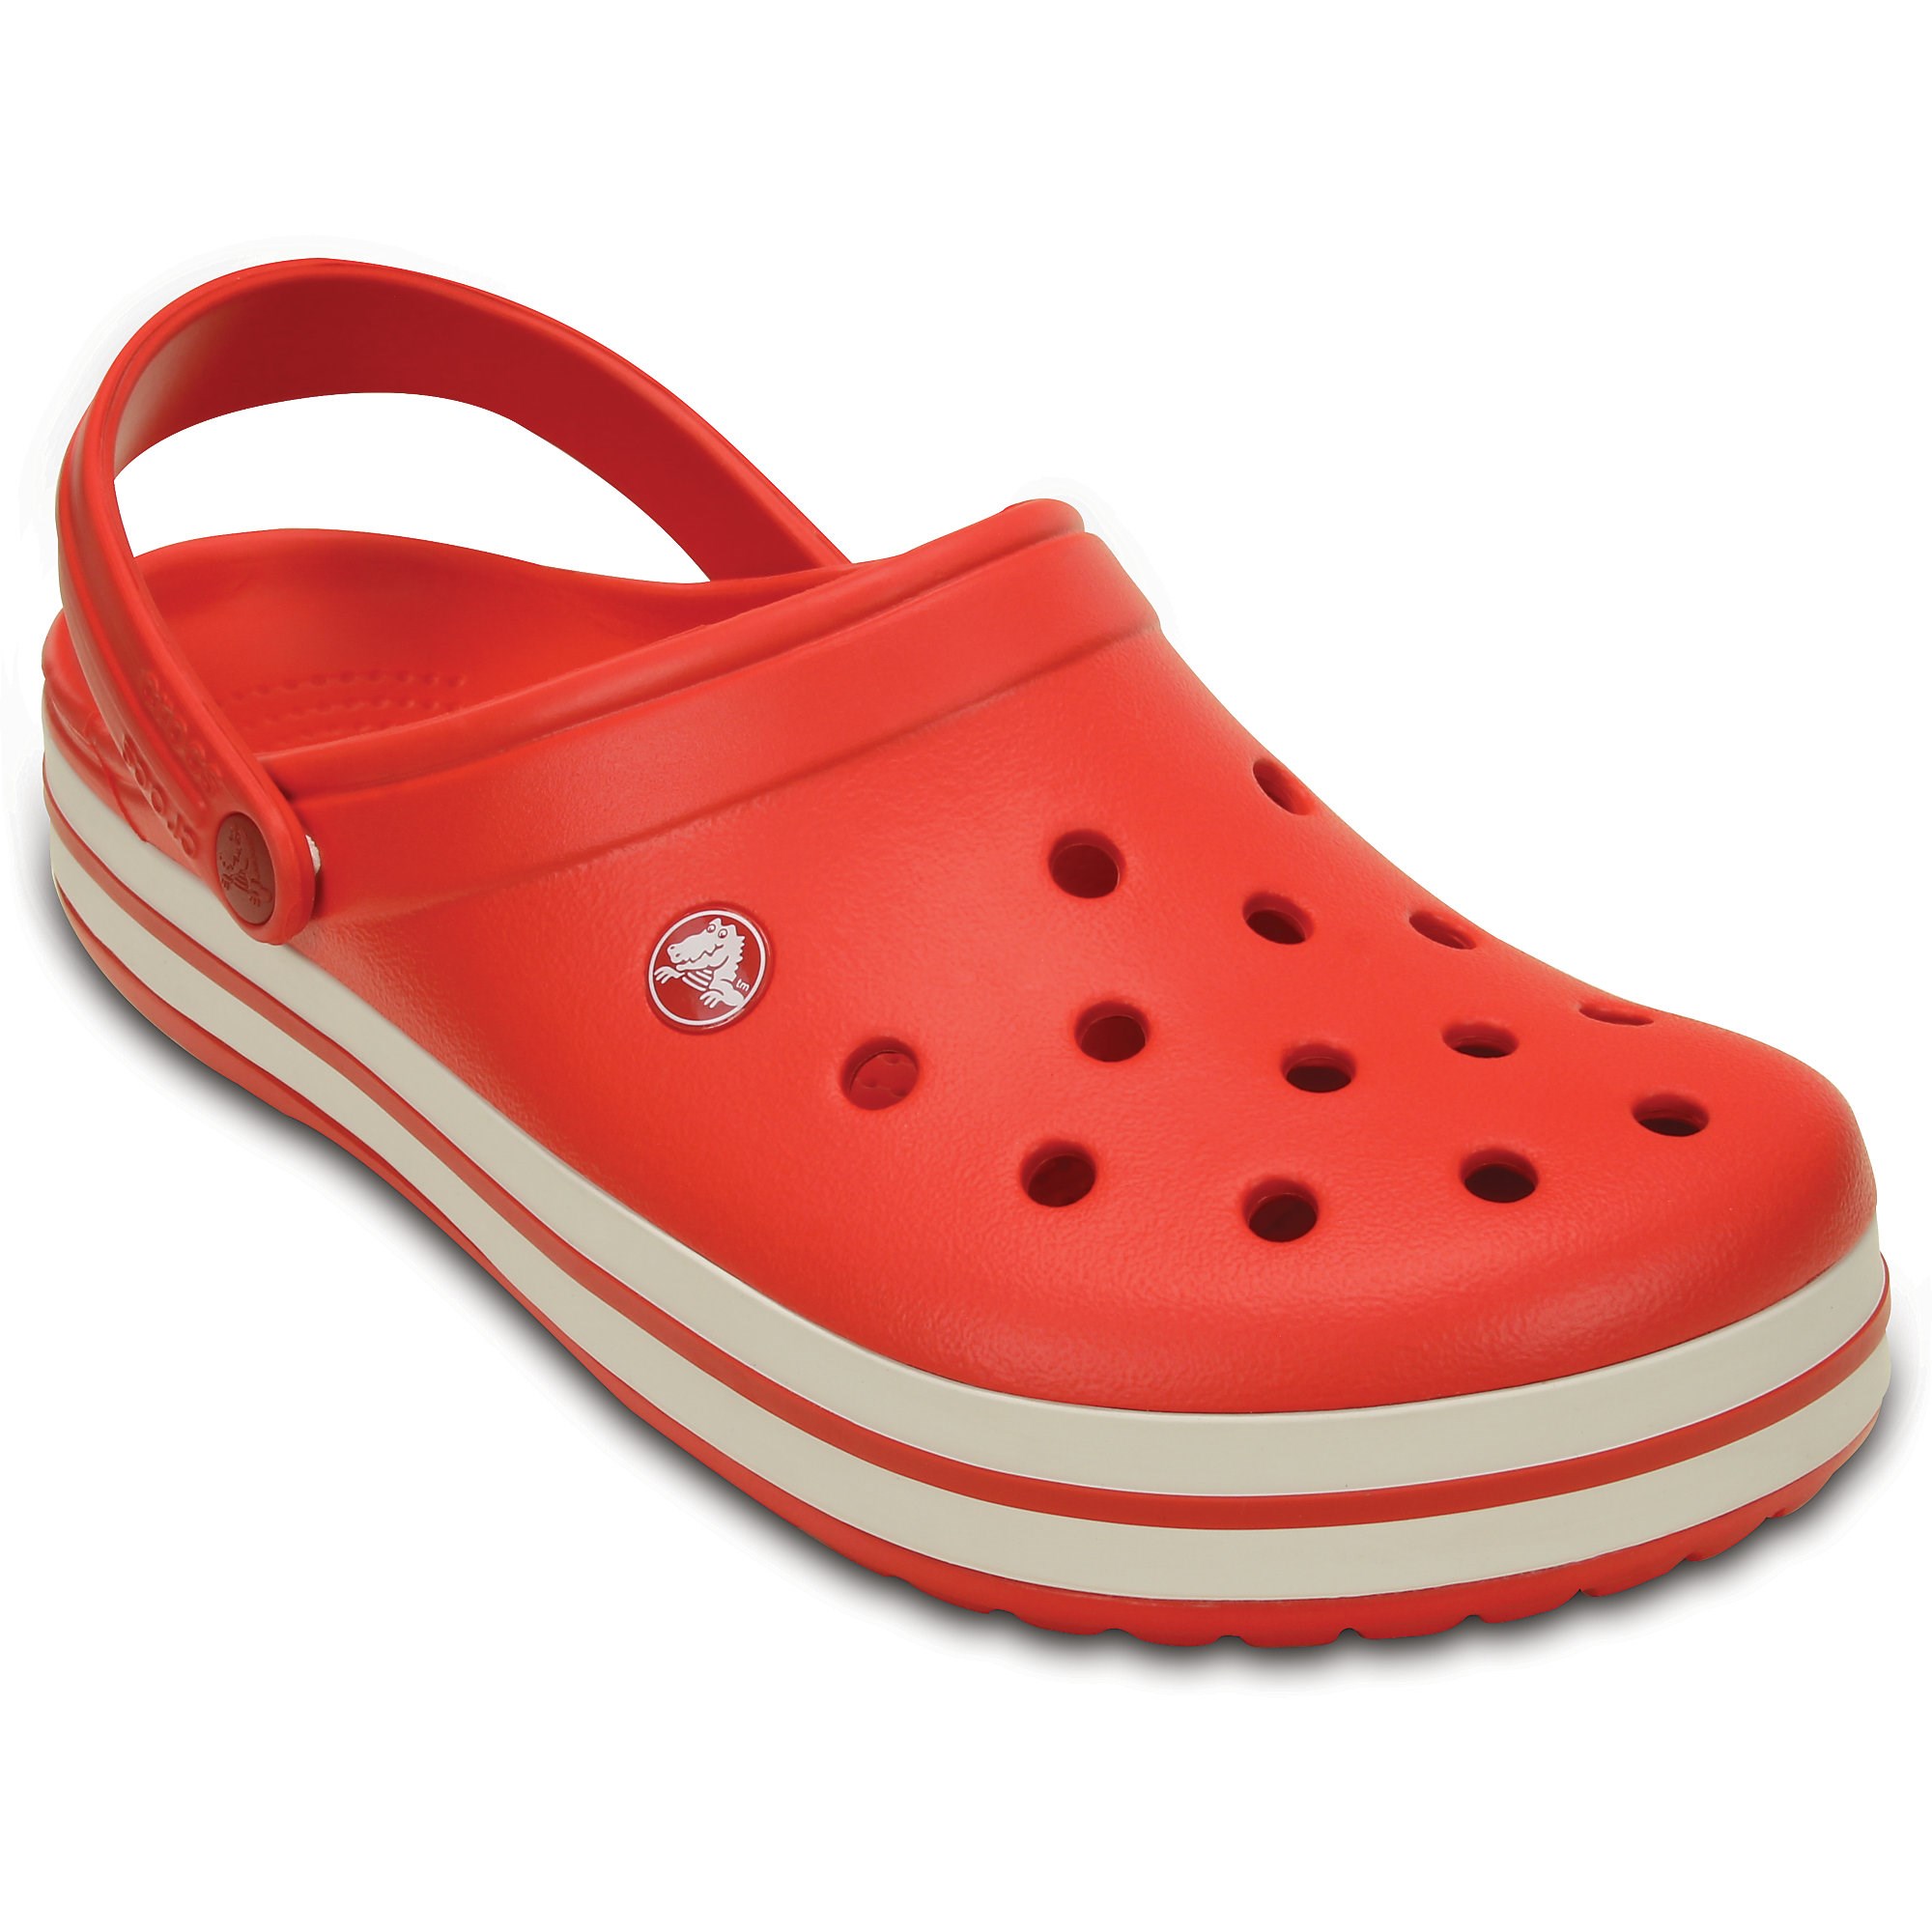 Кроксы сабо оригинал. Сабо Crocs Crocband White. Crocband Crocs красные. Сабо Crocs Crocband Clog. Crocband 11016.